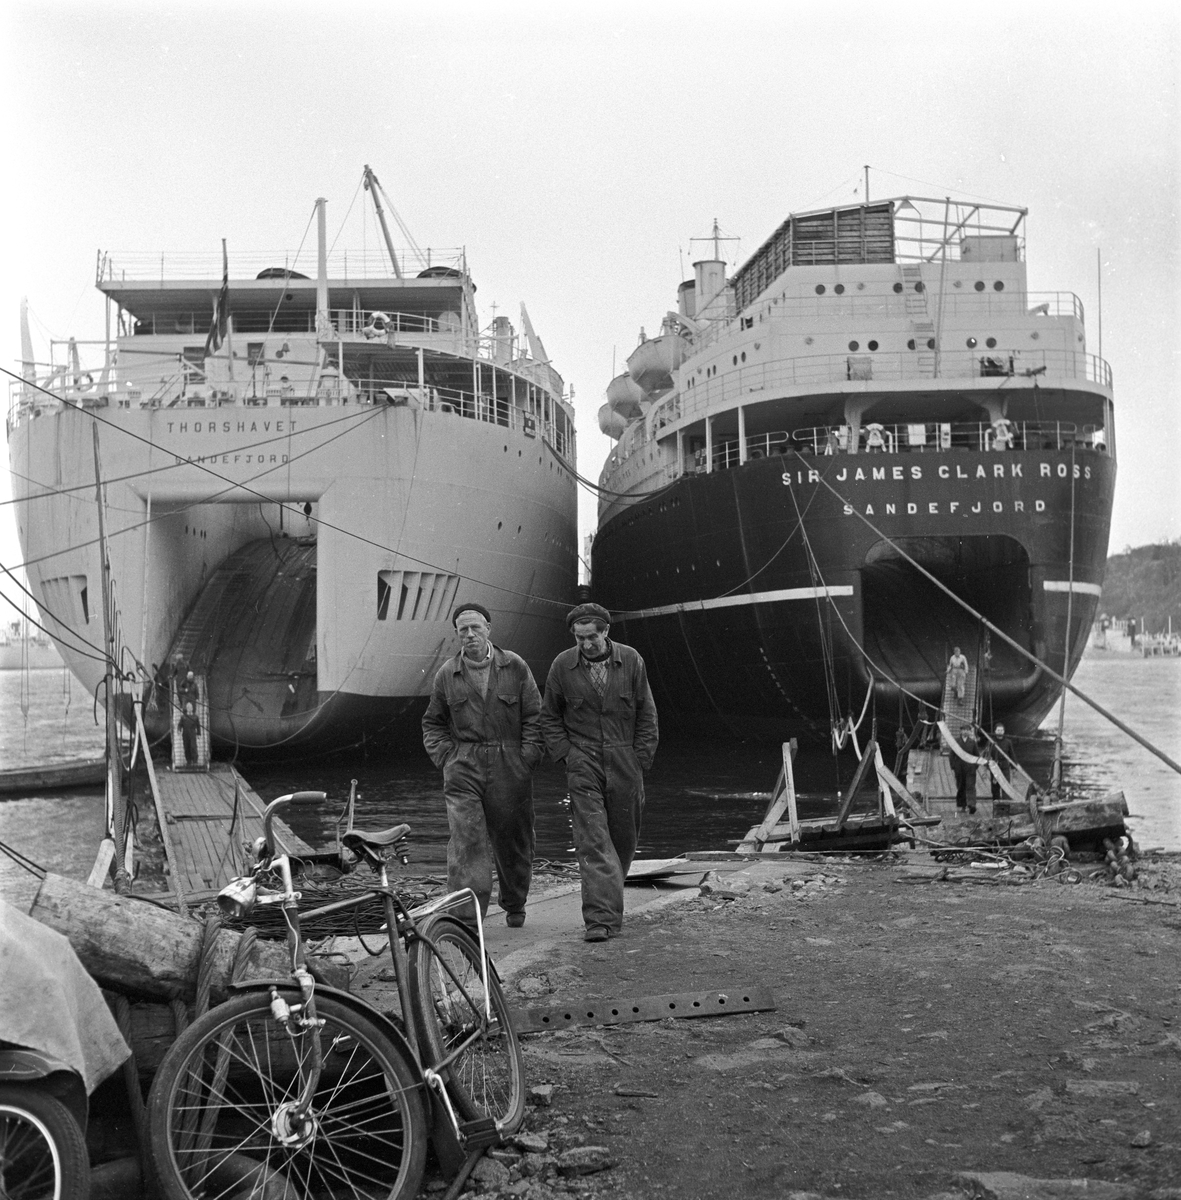 Serie. M/S "Sir James Clark Ross" av Sandefjord og M/S "Thorshavet" av Sandefjord. Fotografert 17/10-1957.